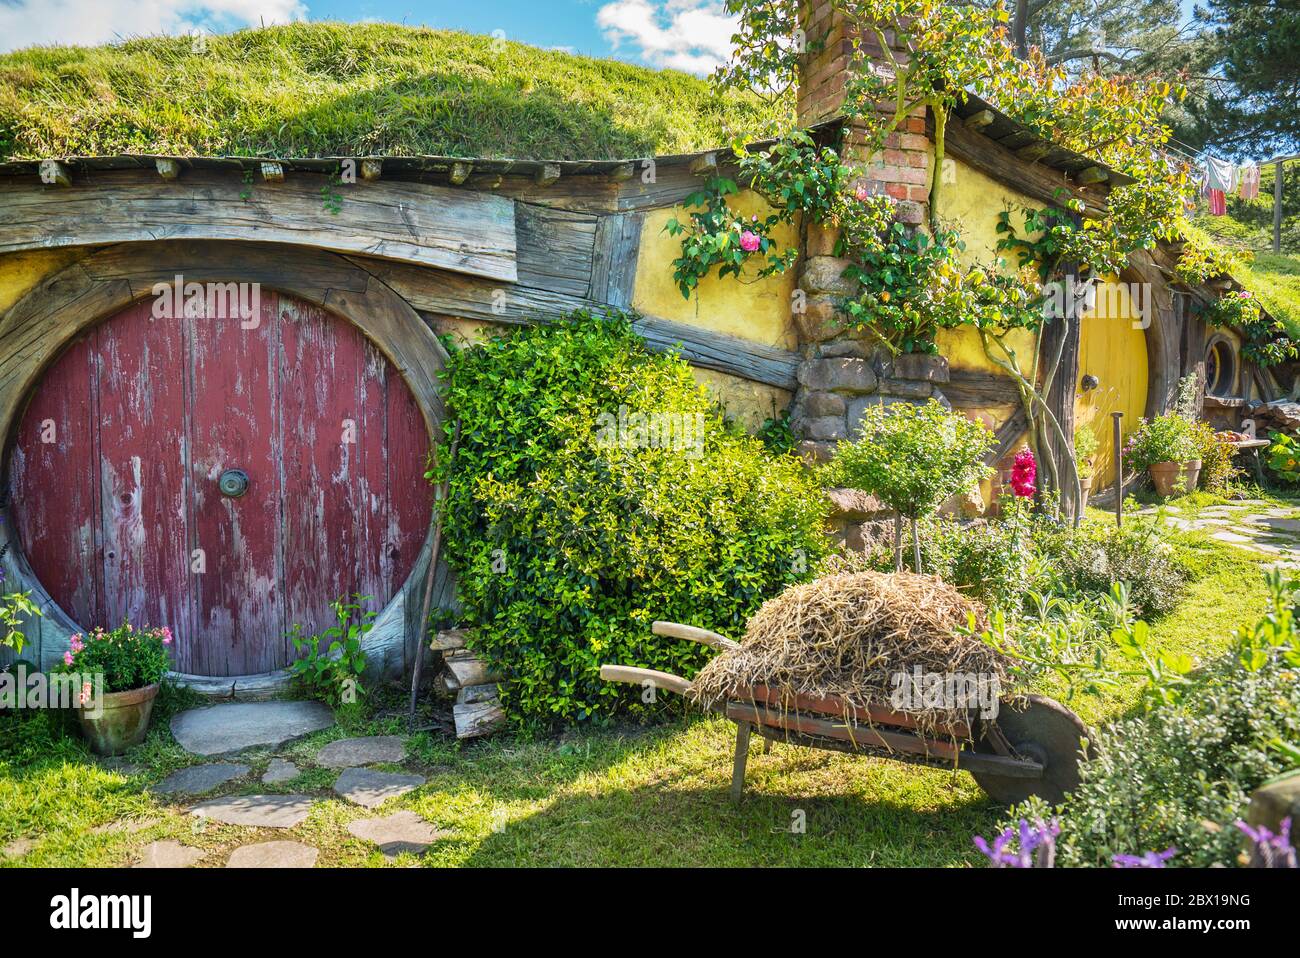 Devant une maison hobbit à Hobbiton en Nouvelle-Zélande Banque D'Images